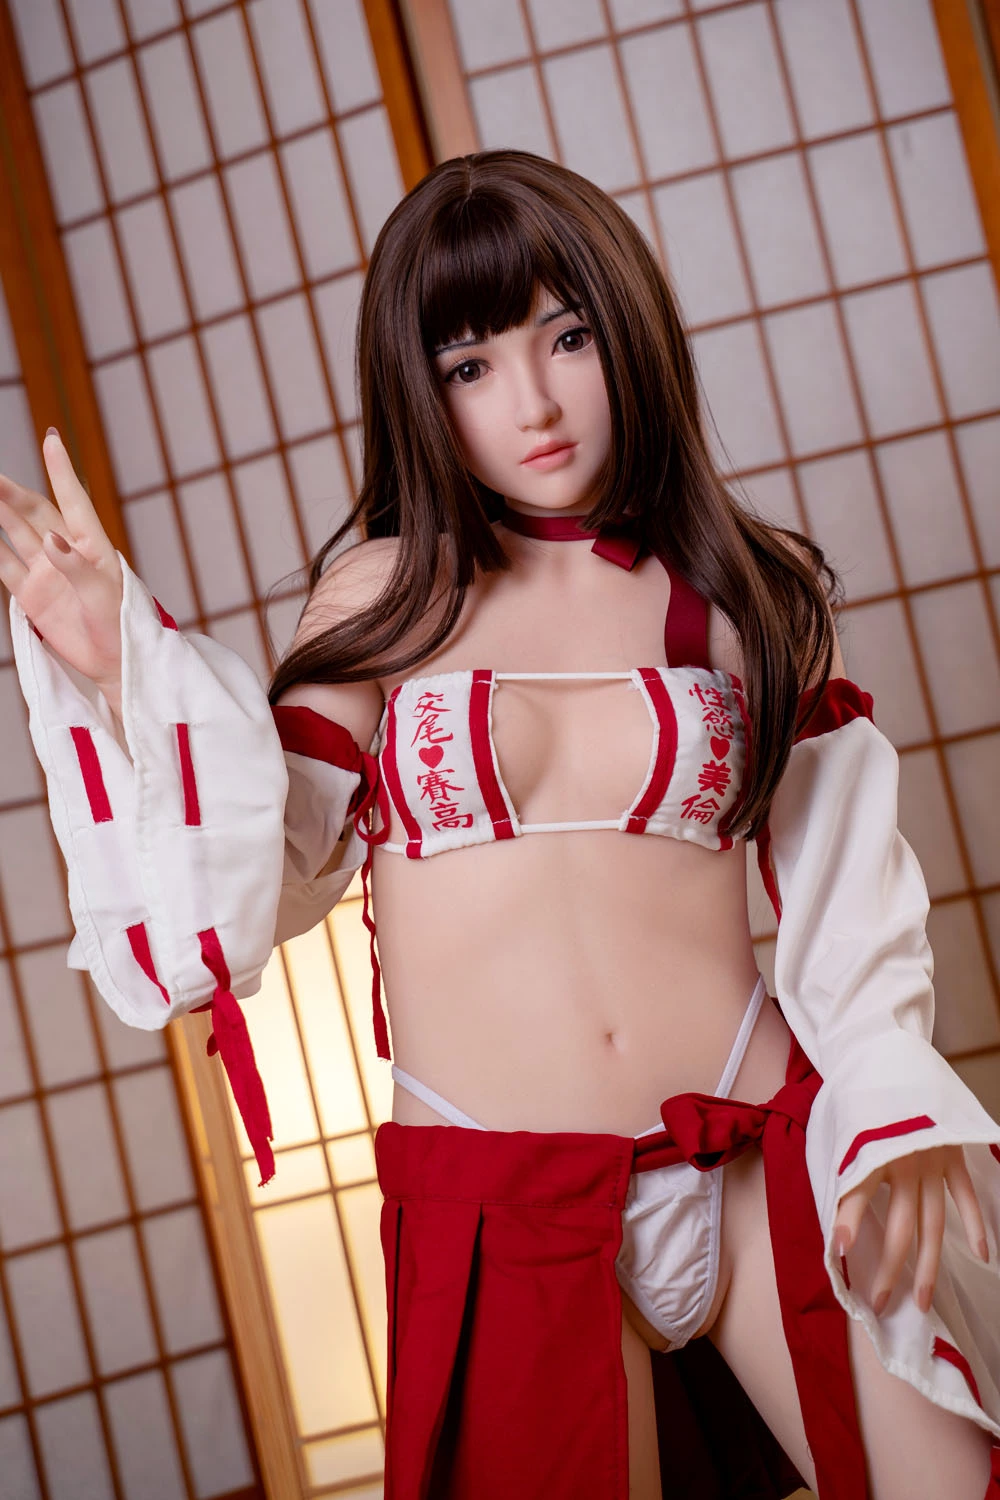 Japanese Girl Loli Sex Doll